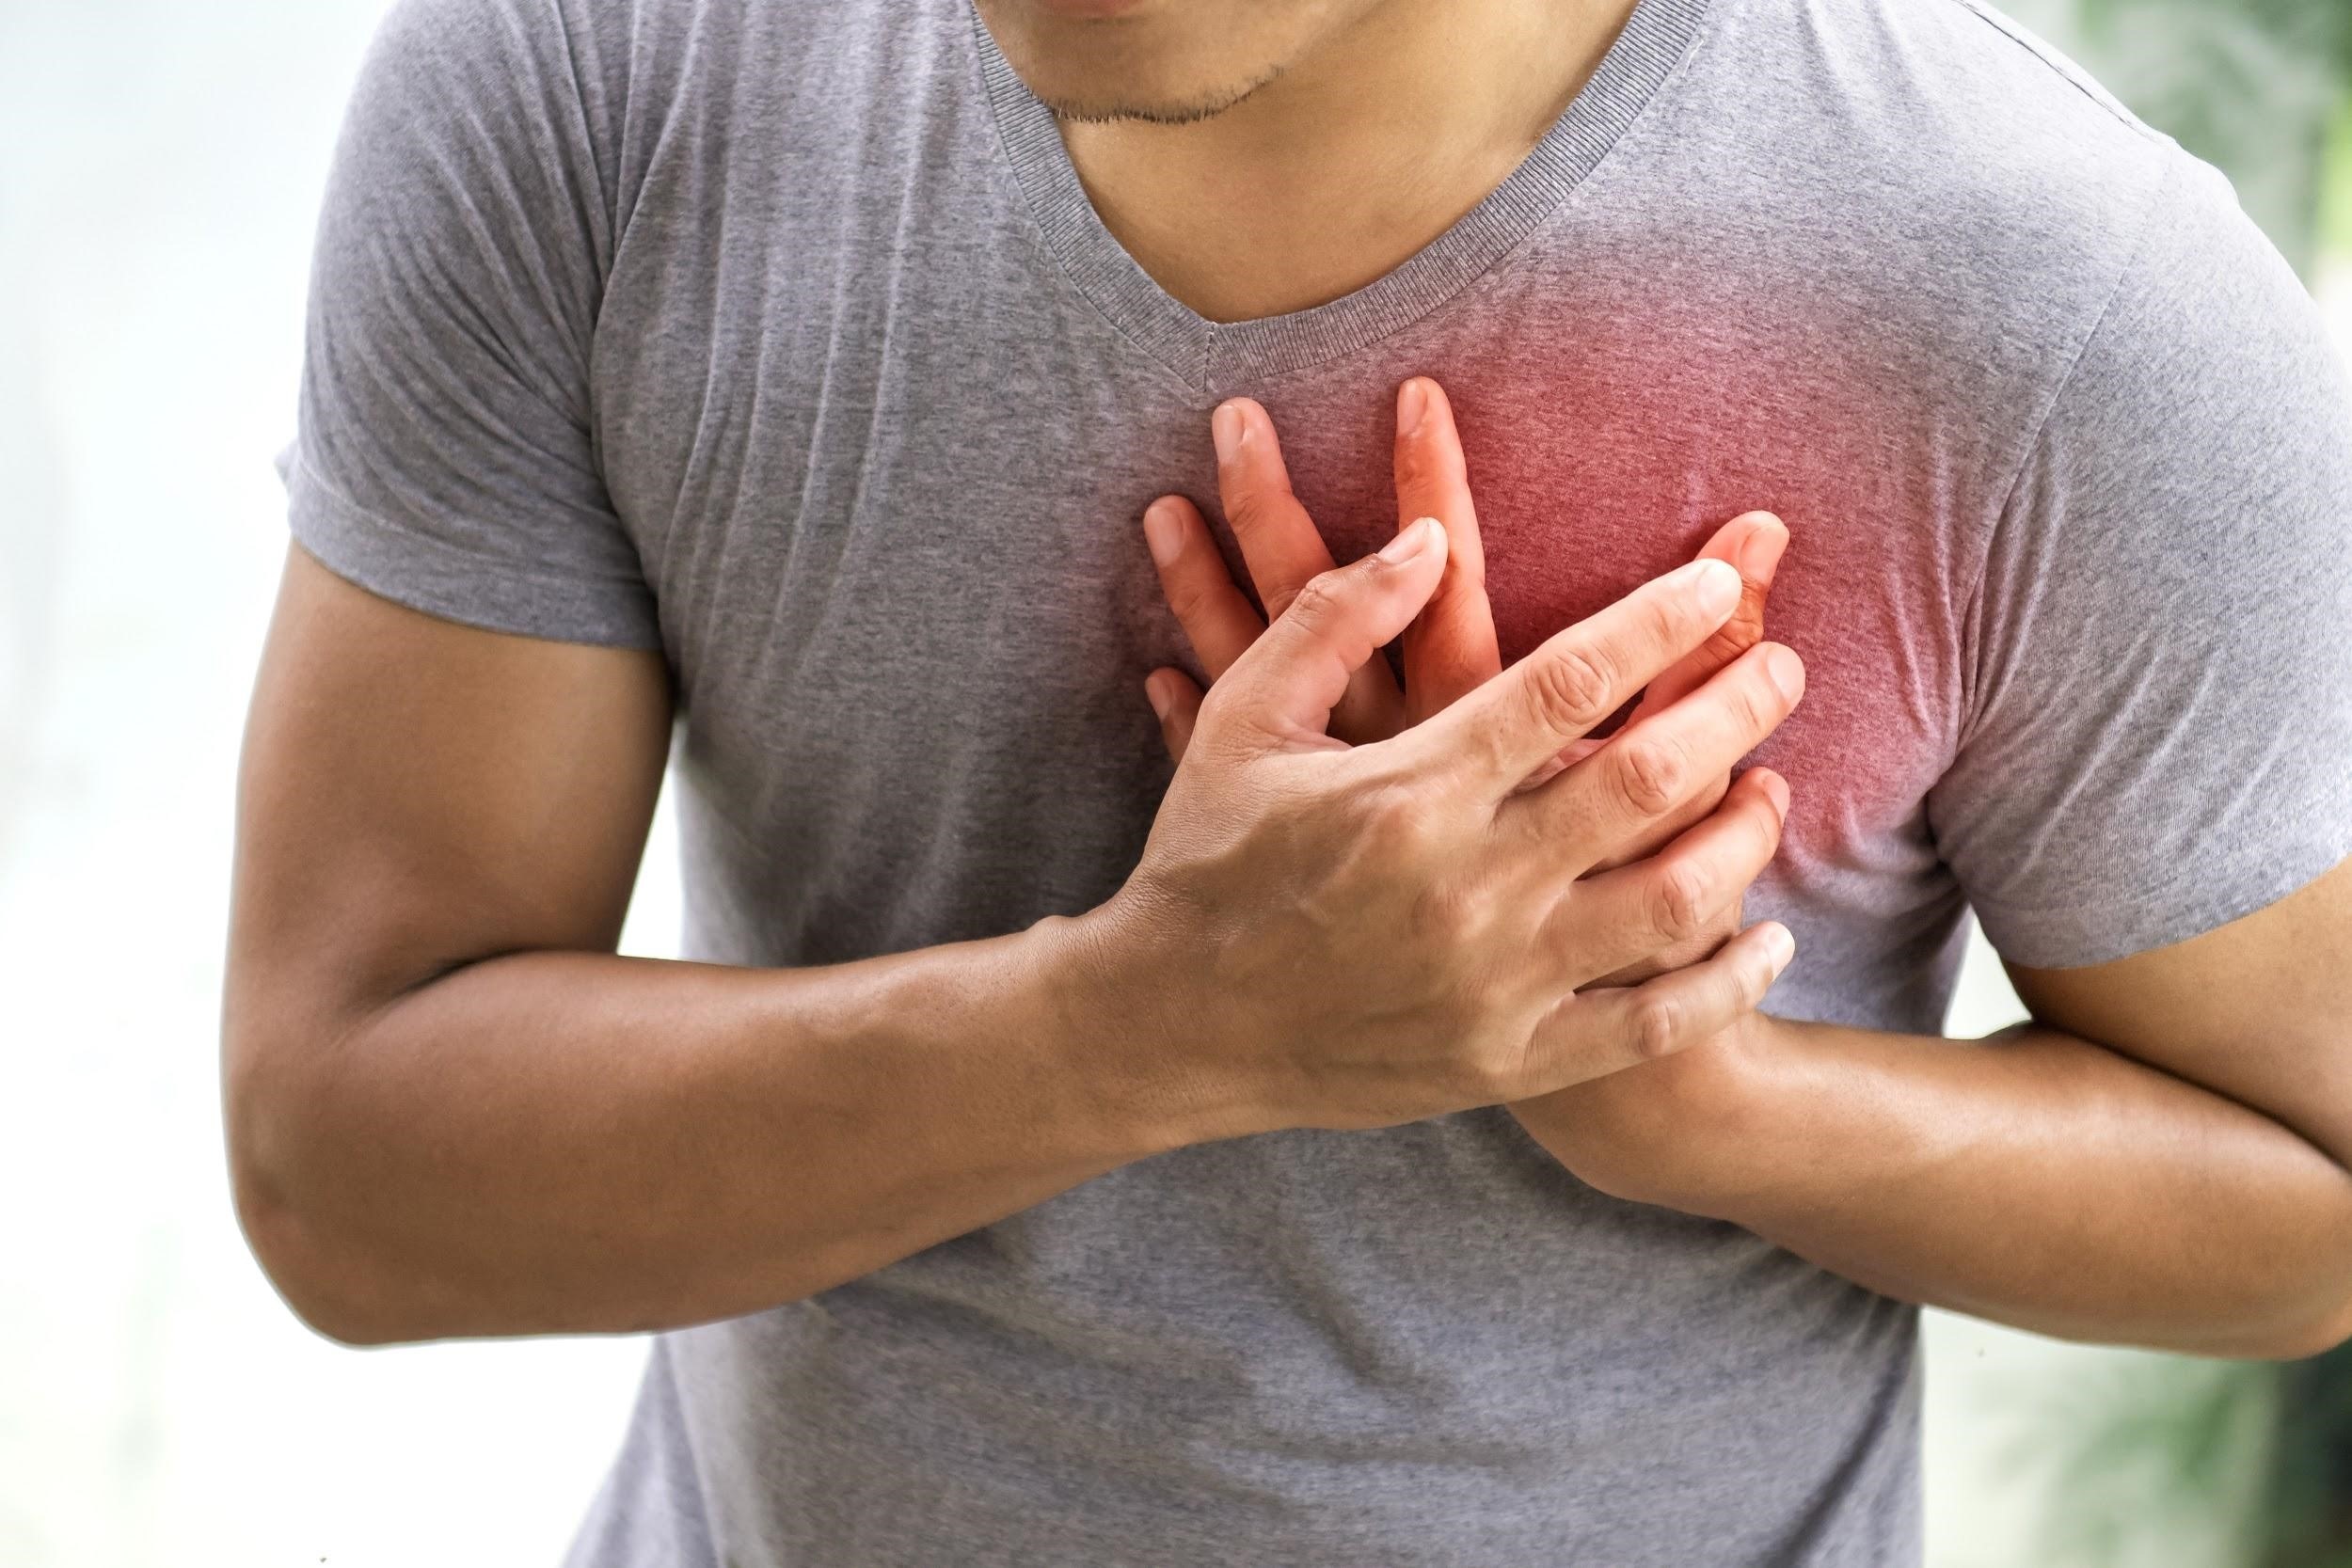 Không phải lúc nào hiện tượng đau ngực cũng nghiêm trọng như bệnh lý tim mạch, vậy làm sao để phân biệt?
